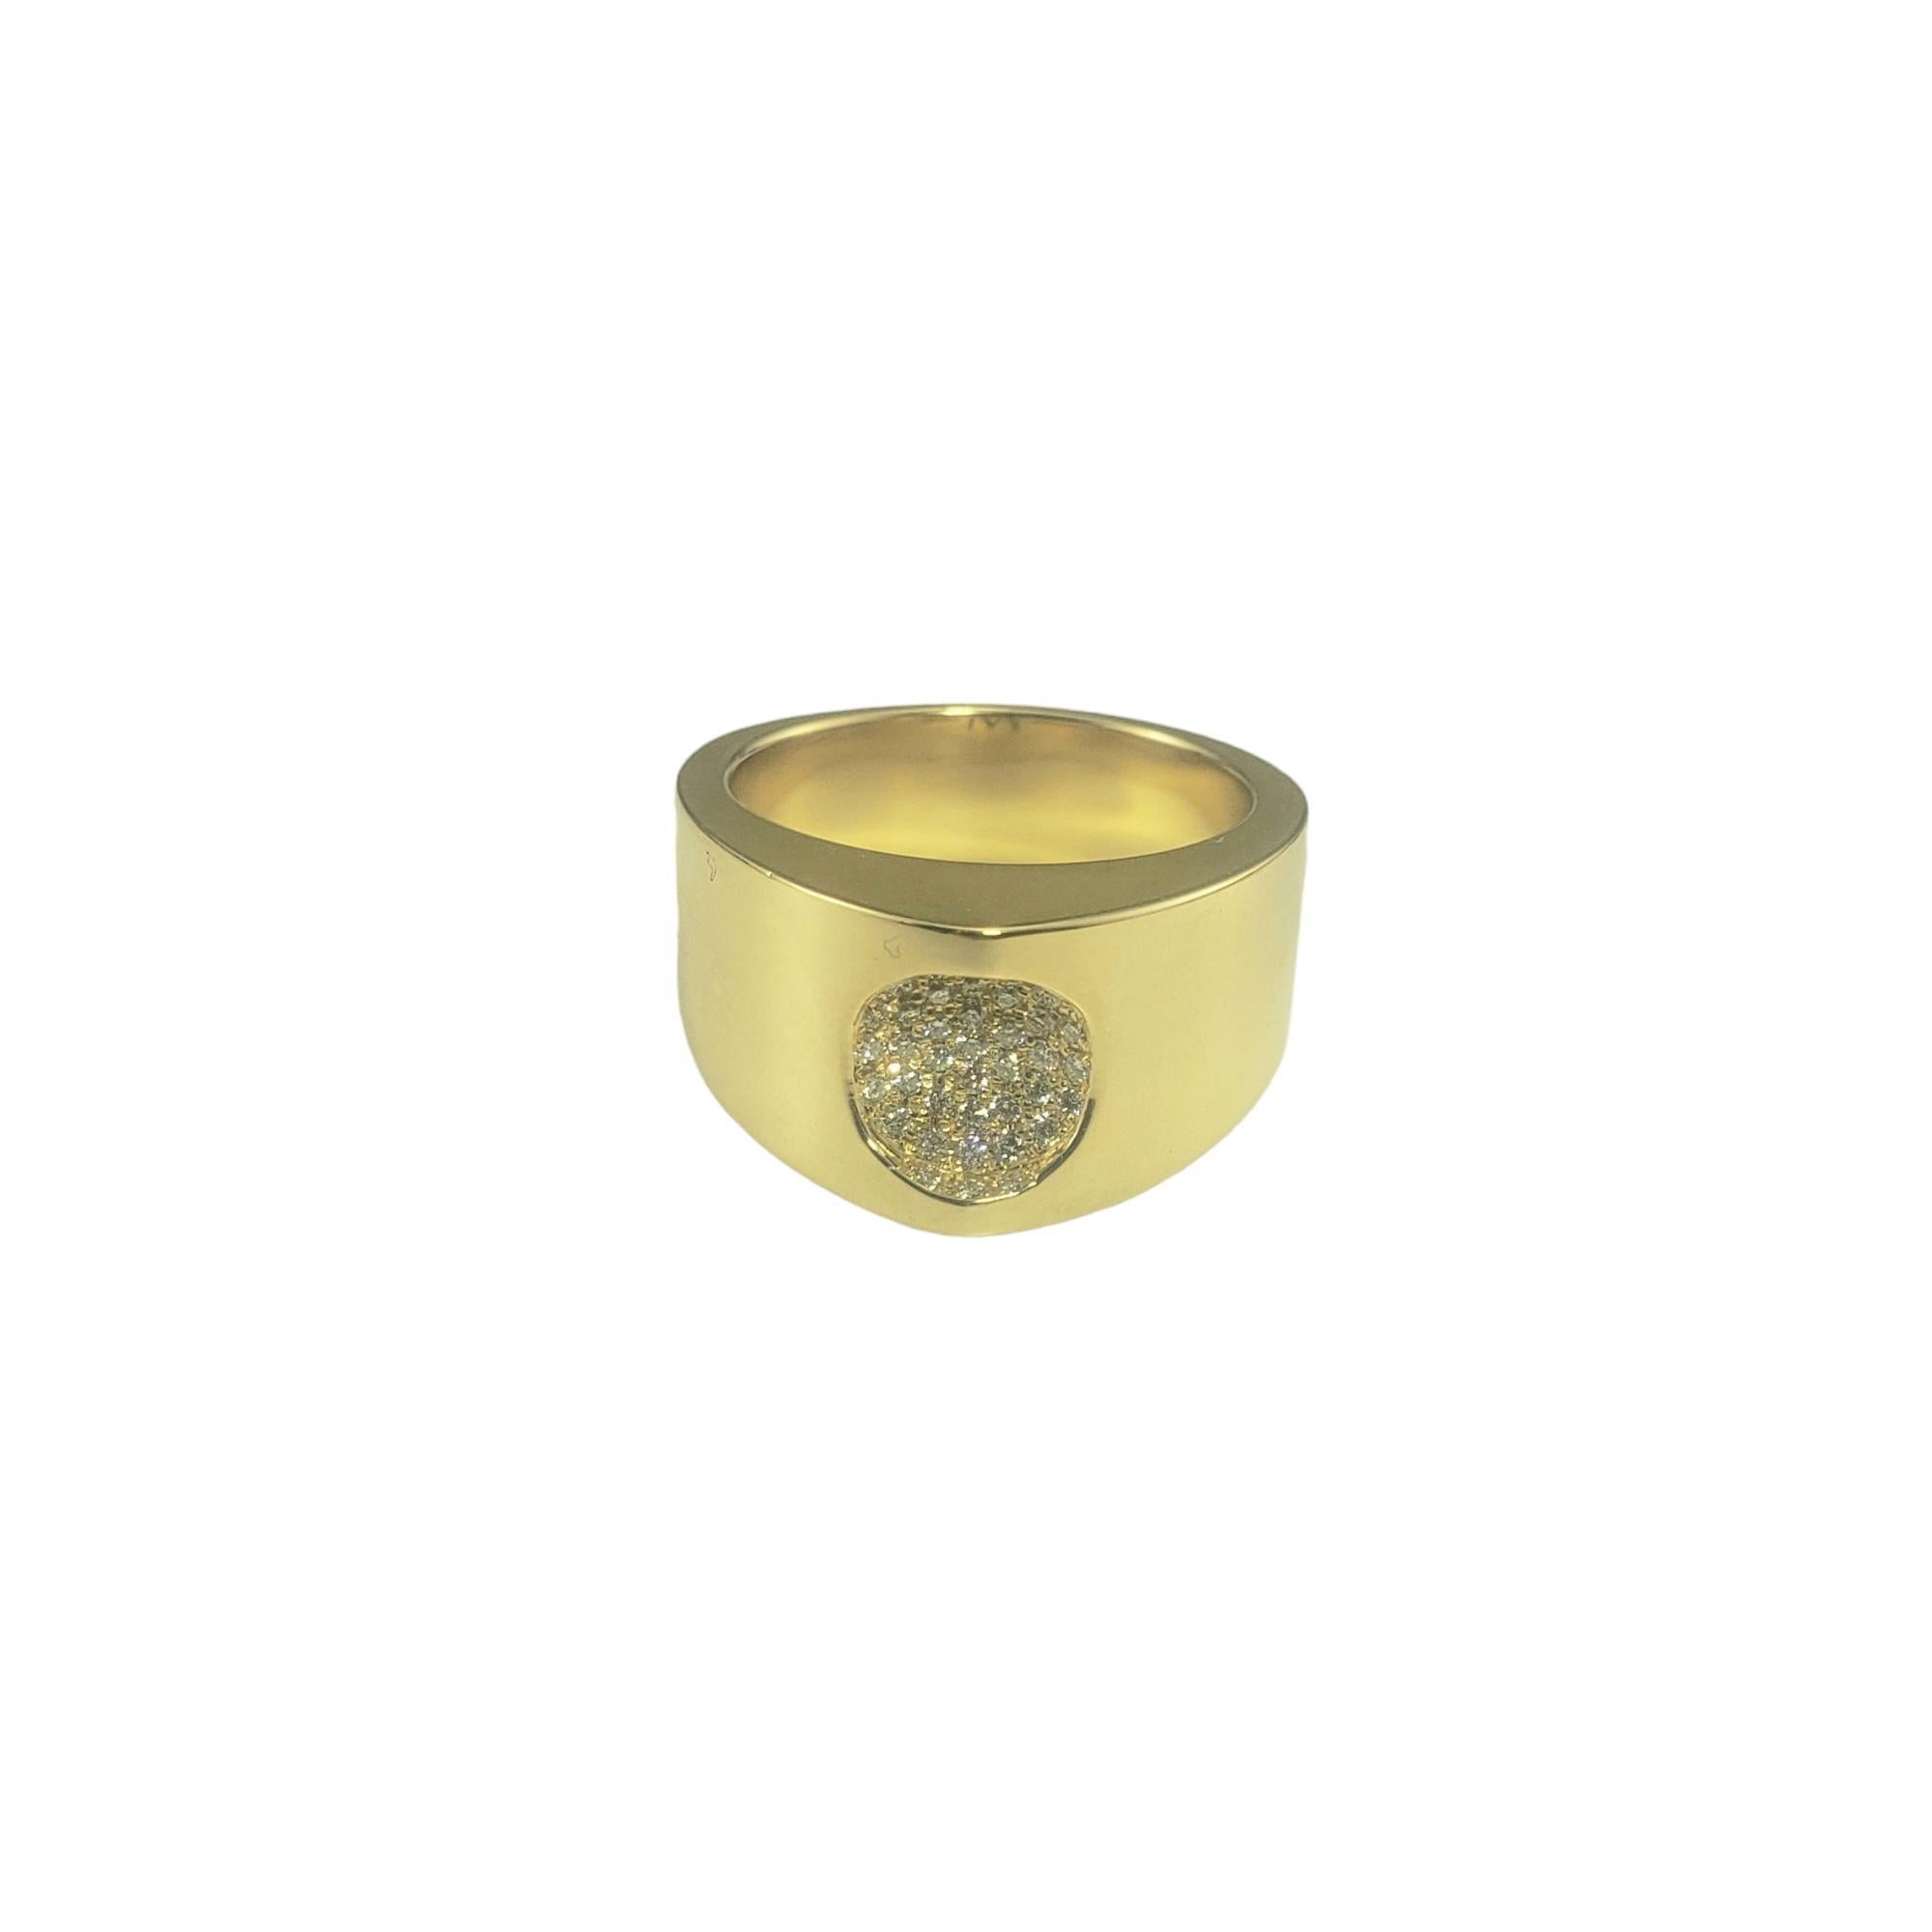 Movado 18K Gelbgold und Diamant Ring Größe 7,5

Dieser atemberaubende Ring ist mit 34 runden Diamanten im Brillantschliff besetzt, die in wunderschön detailliertes 18-karätiges Gelbgold gefasst sind.  

Breite: 11 mm.  Höhe: 7 mm. Schaft: 6